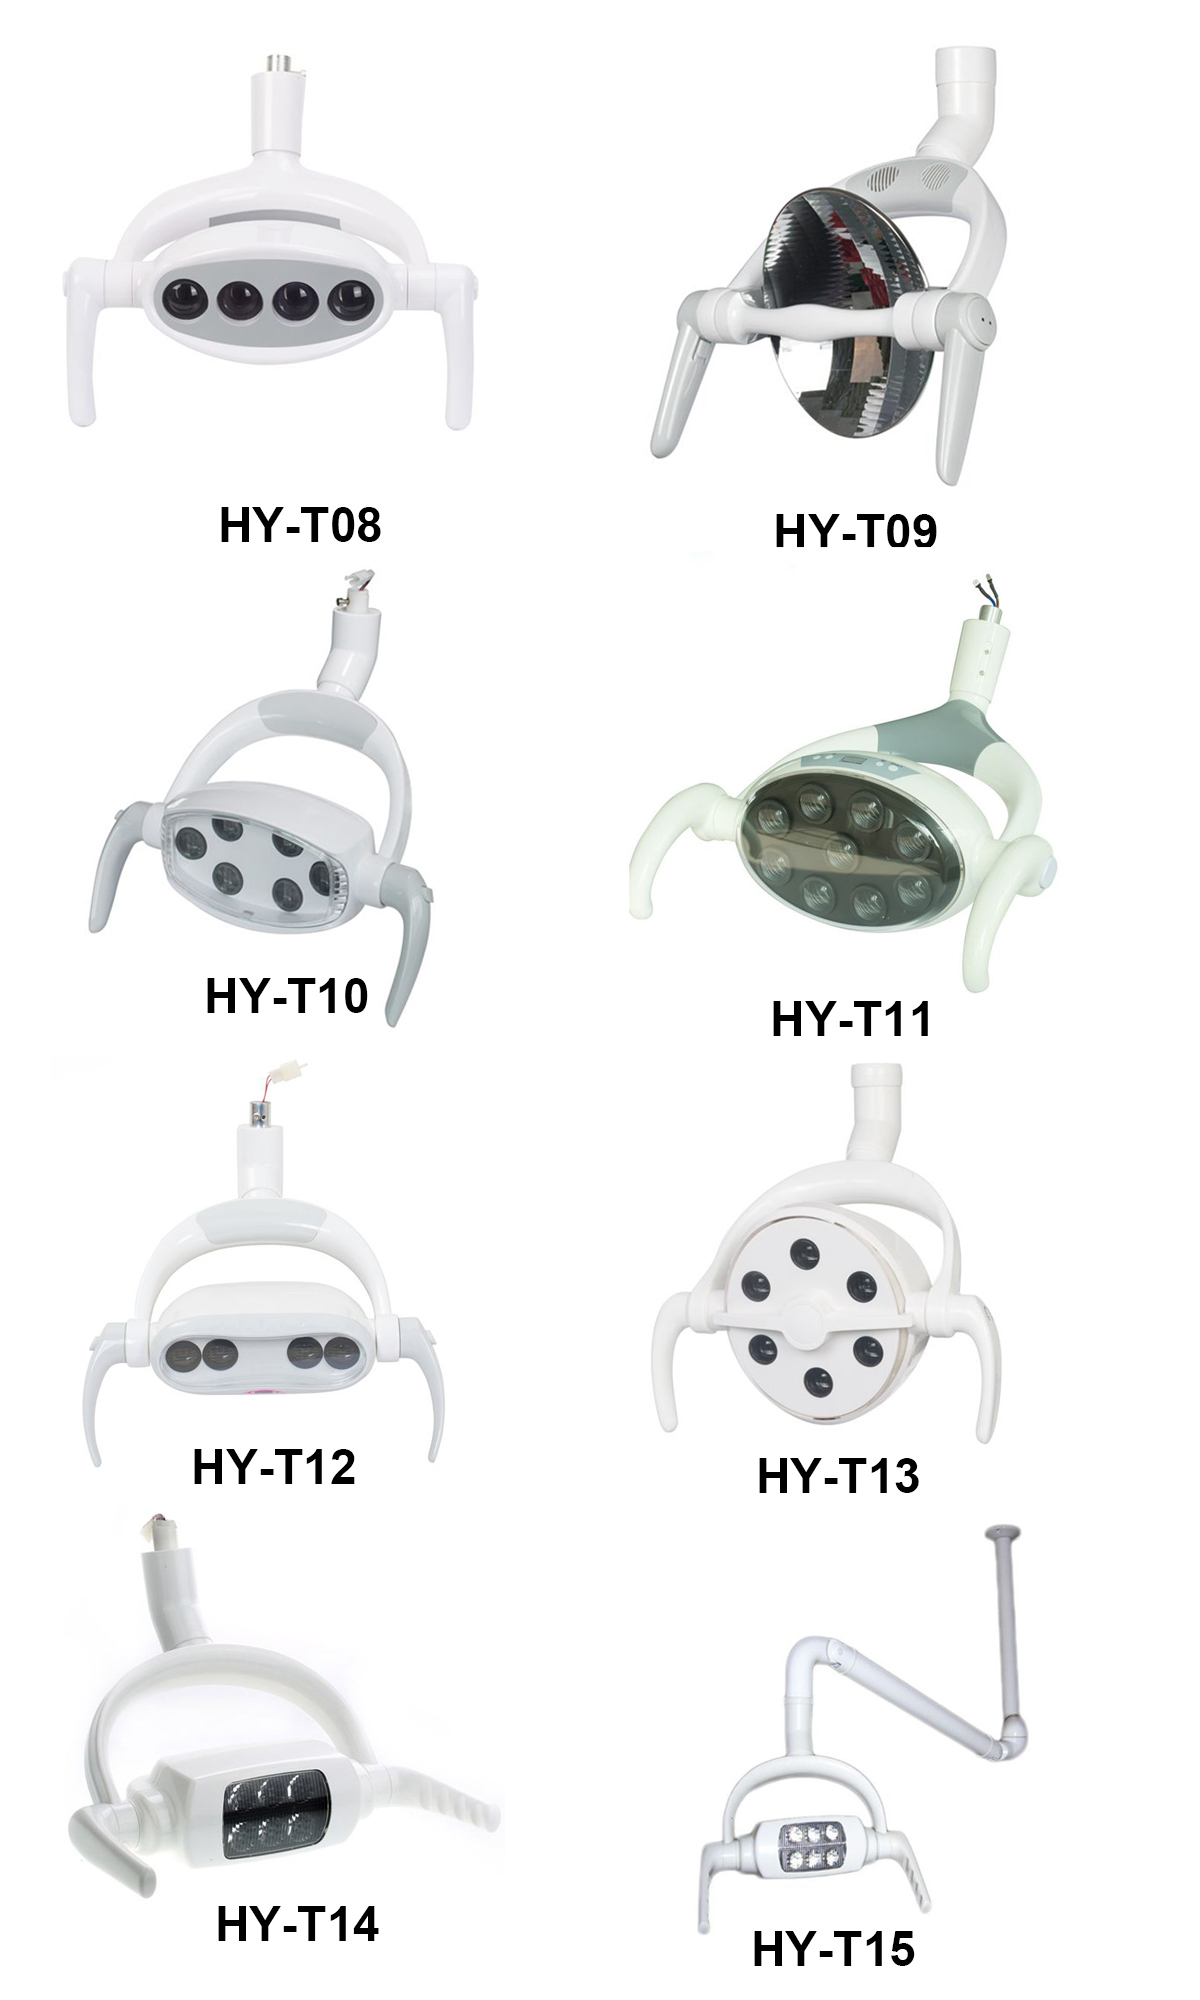 HY-T15 Dental LED Lamp